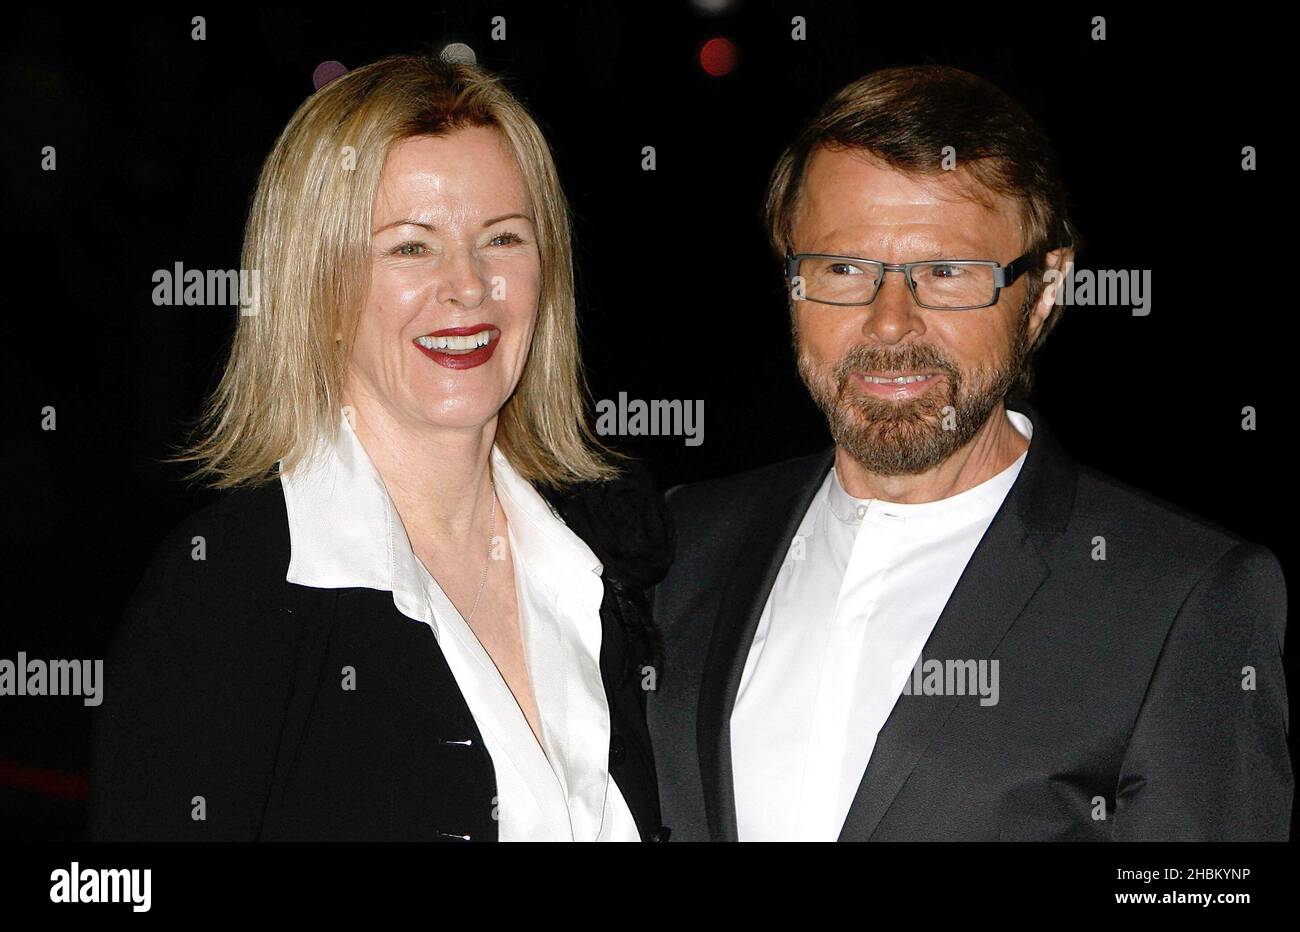 Anni-Frid Lyngstad und Bjorn Ulvaeus kommen zur Premiere der ABBA-Weltausstellung im Earl's Court in London. Stockfoto